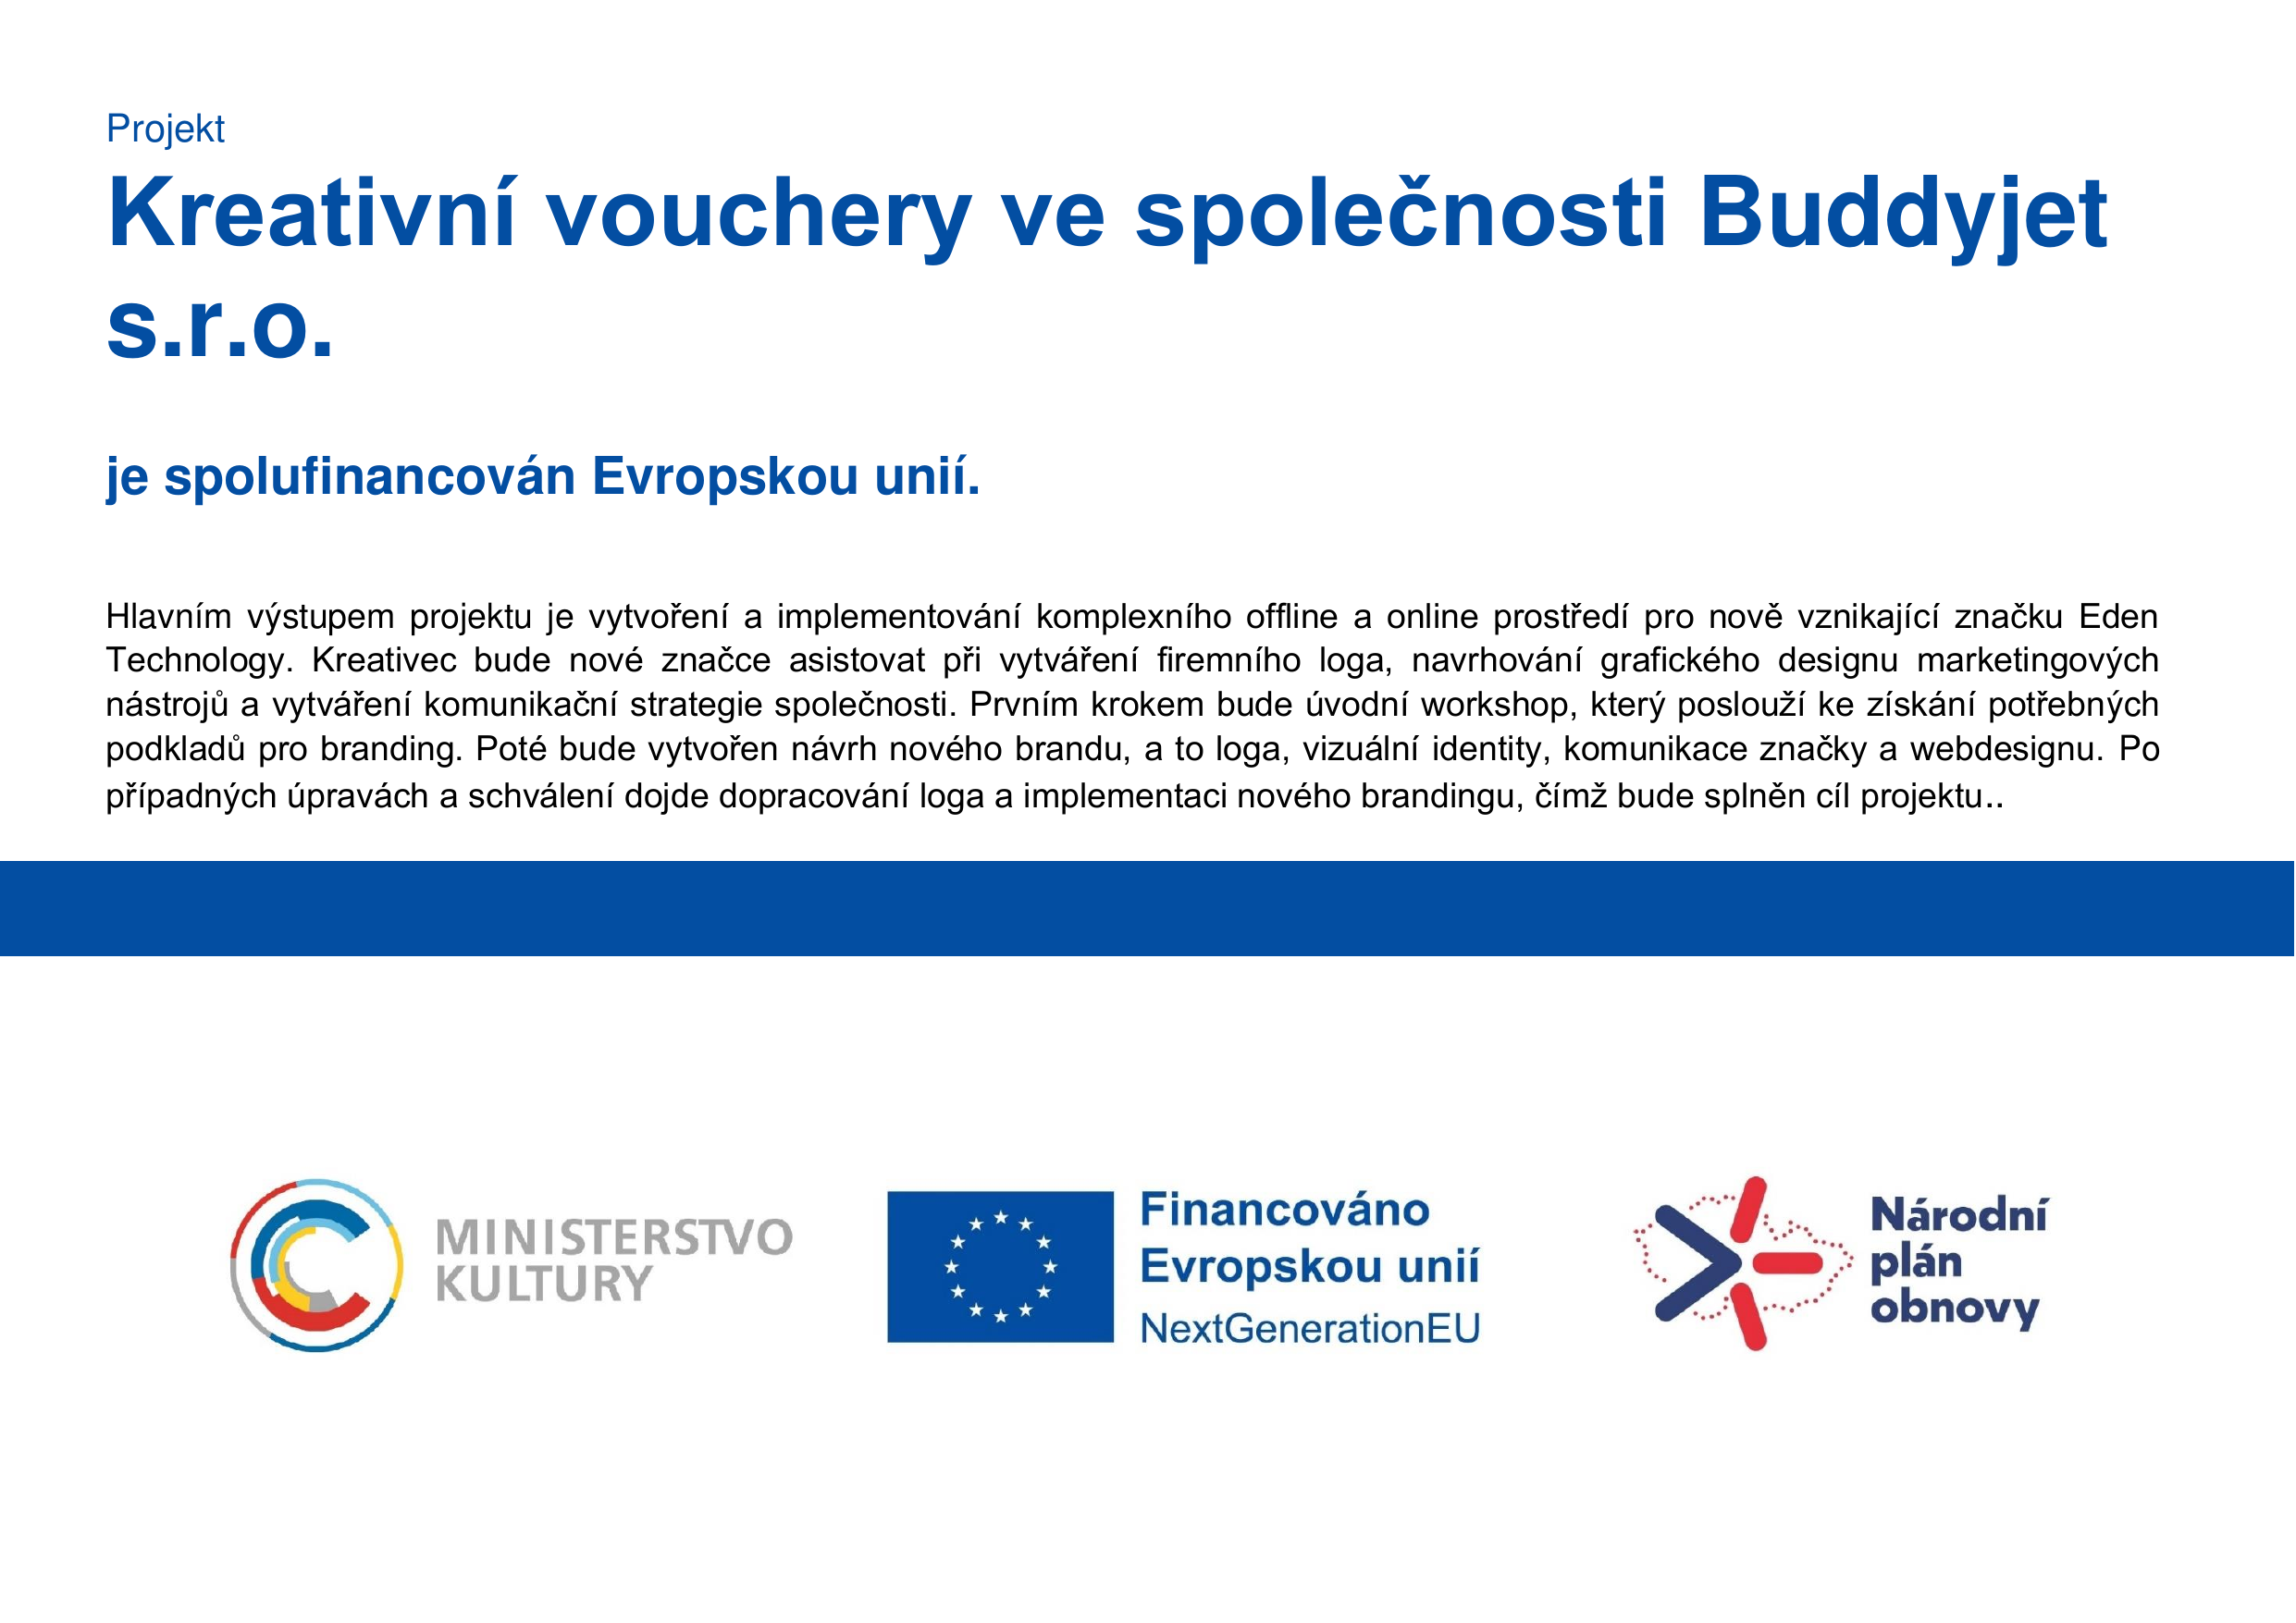 Projekt Kreativní vouchery ve společnosti Buddyjet s.r.o je spolufinancován Evropskou unií.